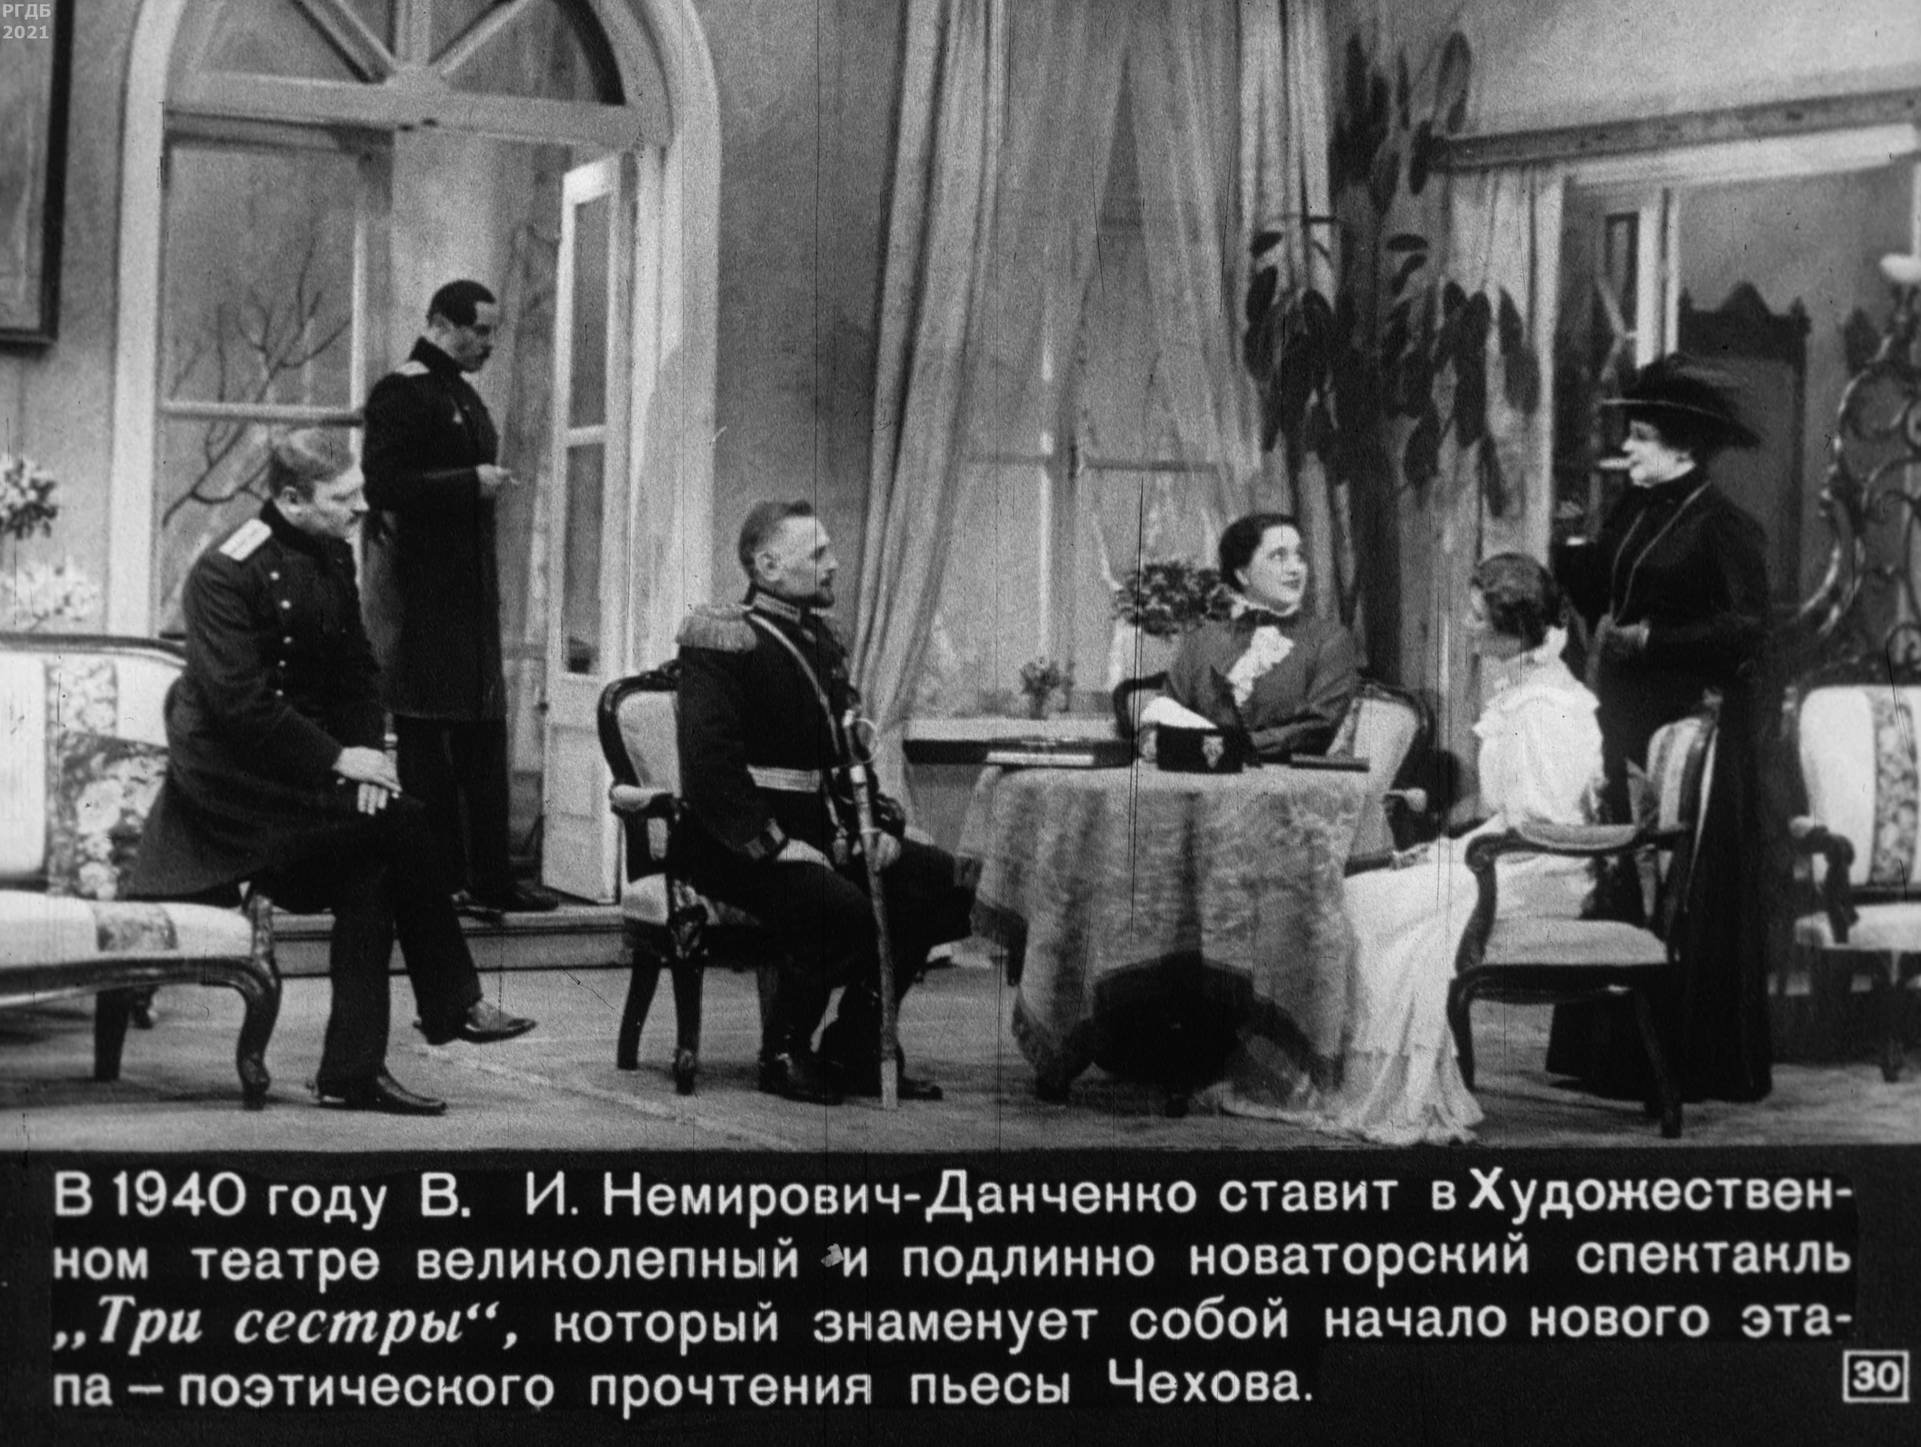 Драмы А.П. Чехова на русской и советской сцене (1969)